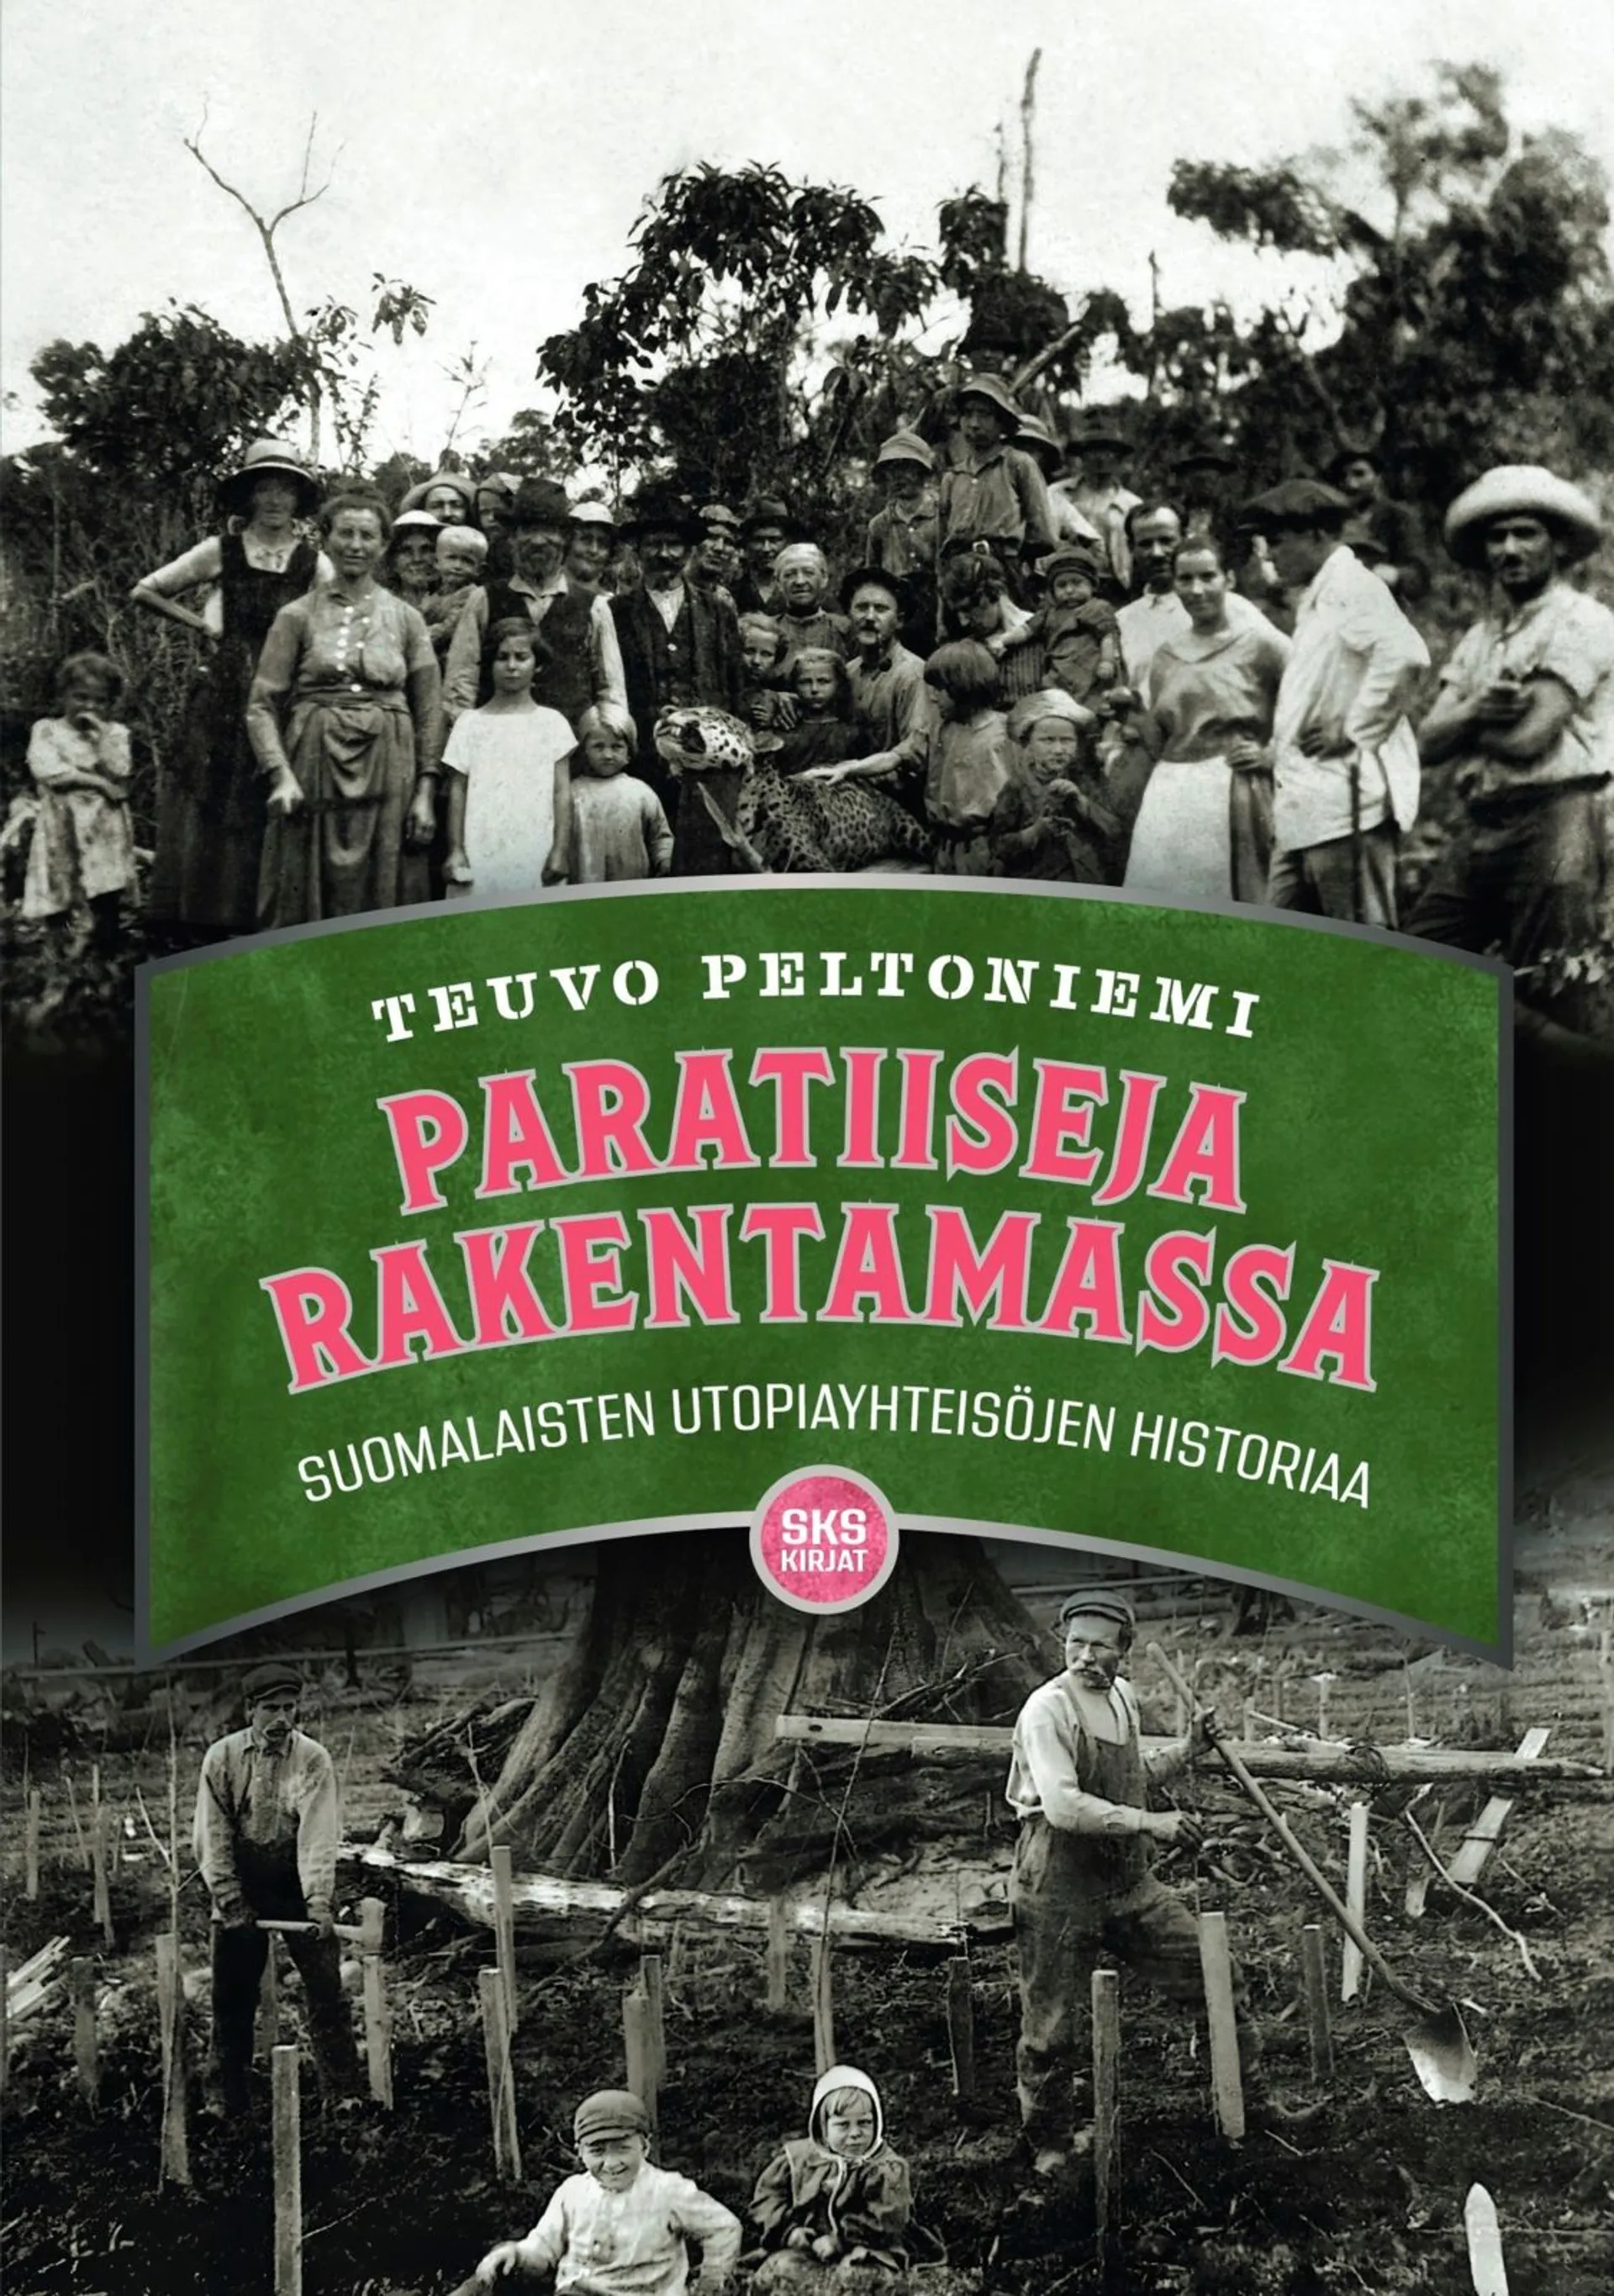 Peltoniemi, Paratiiseja rakentamassa - Suomalaisten utopiayhteisöjen historiaa